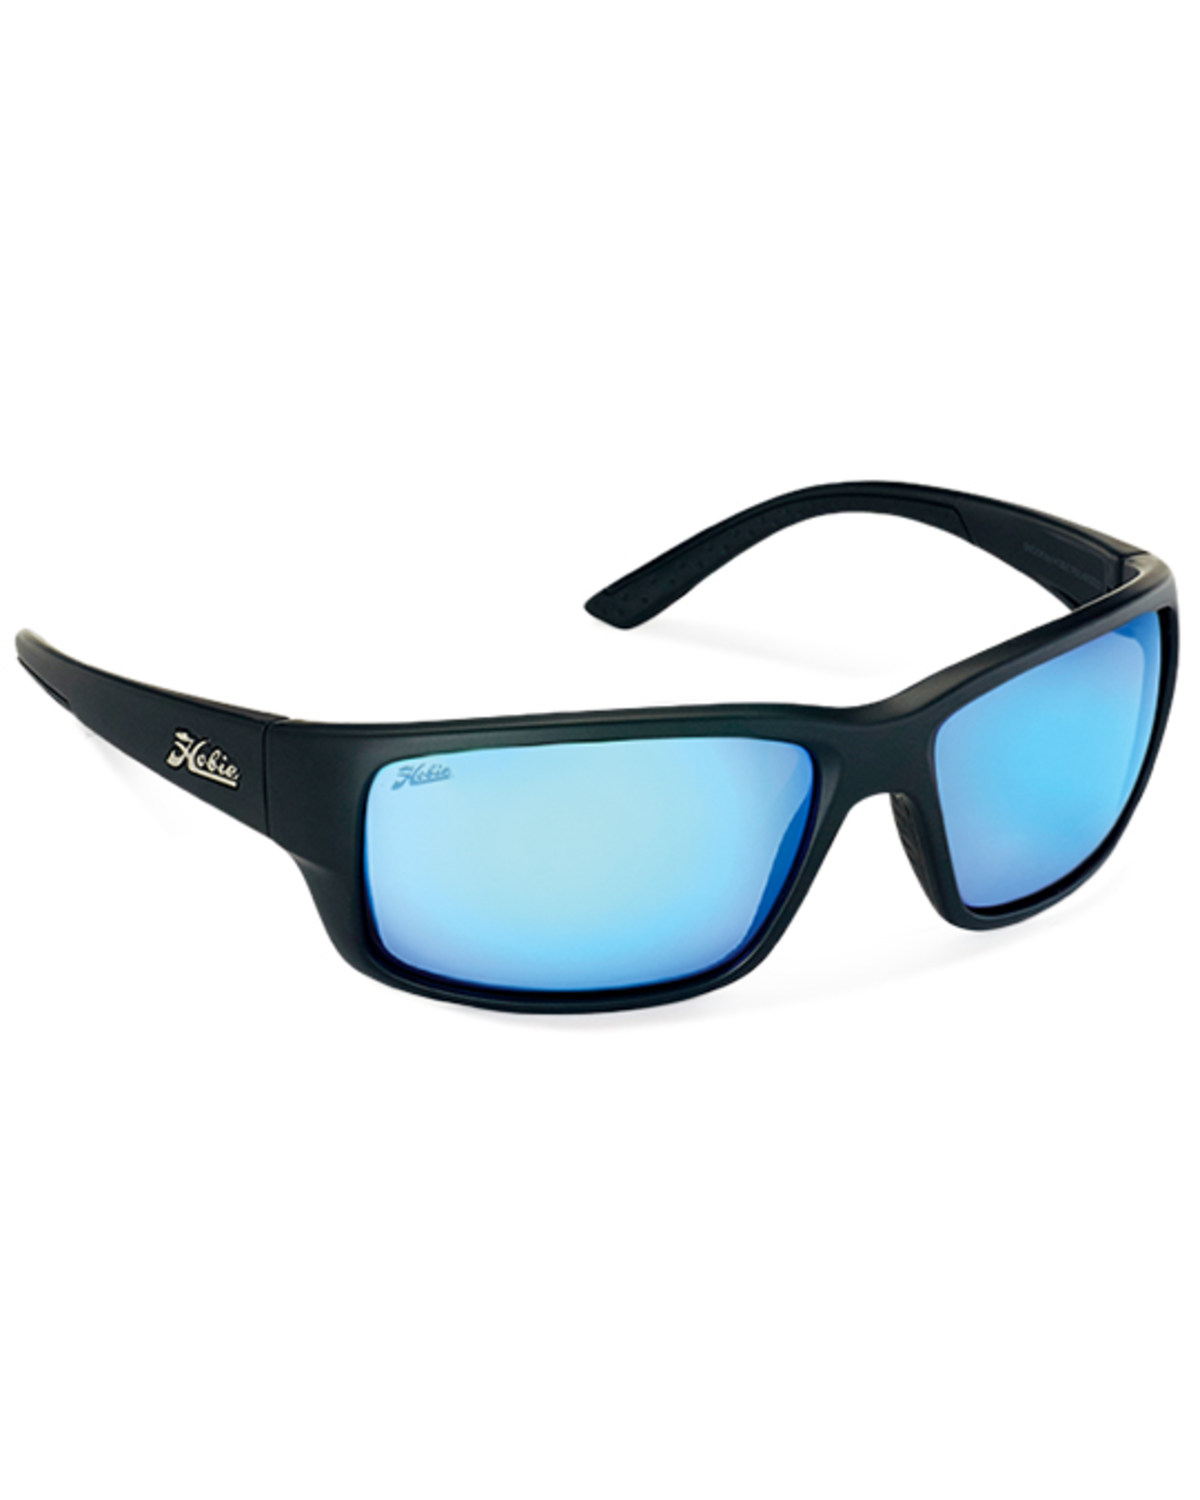 Hobie Men's Snook Satin Black & Gray Polarized Sunglasses